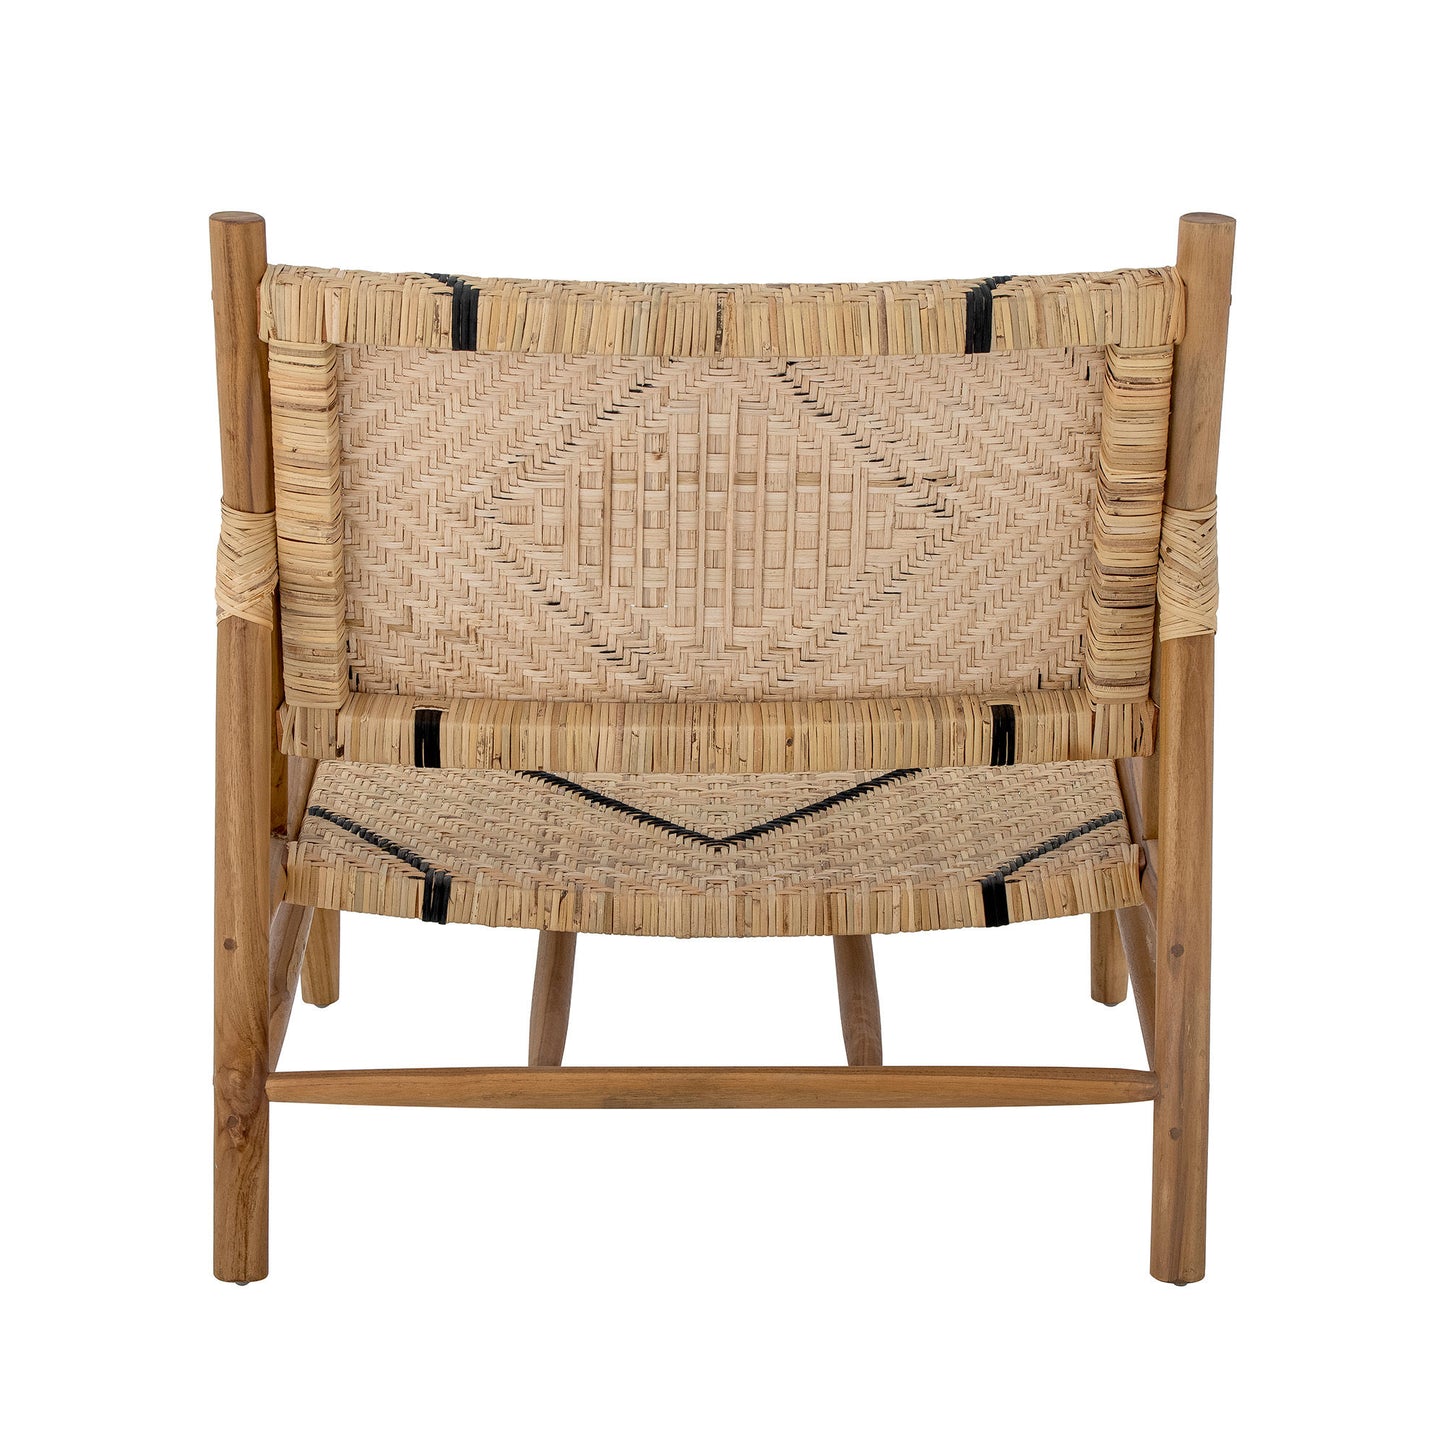 Chaise lounge en teak LENNOX Lennox Lounge Chair, Nature, TeakMaison Bloom Concept 